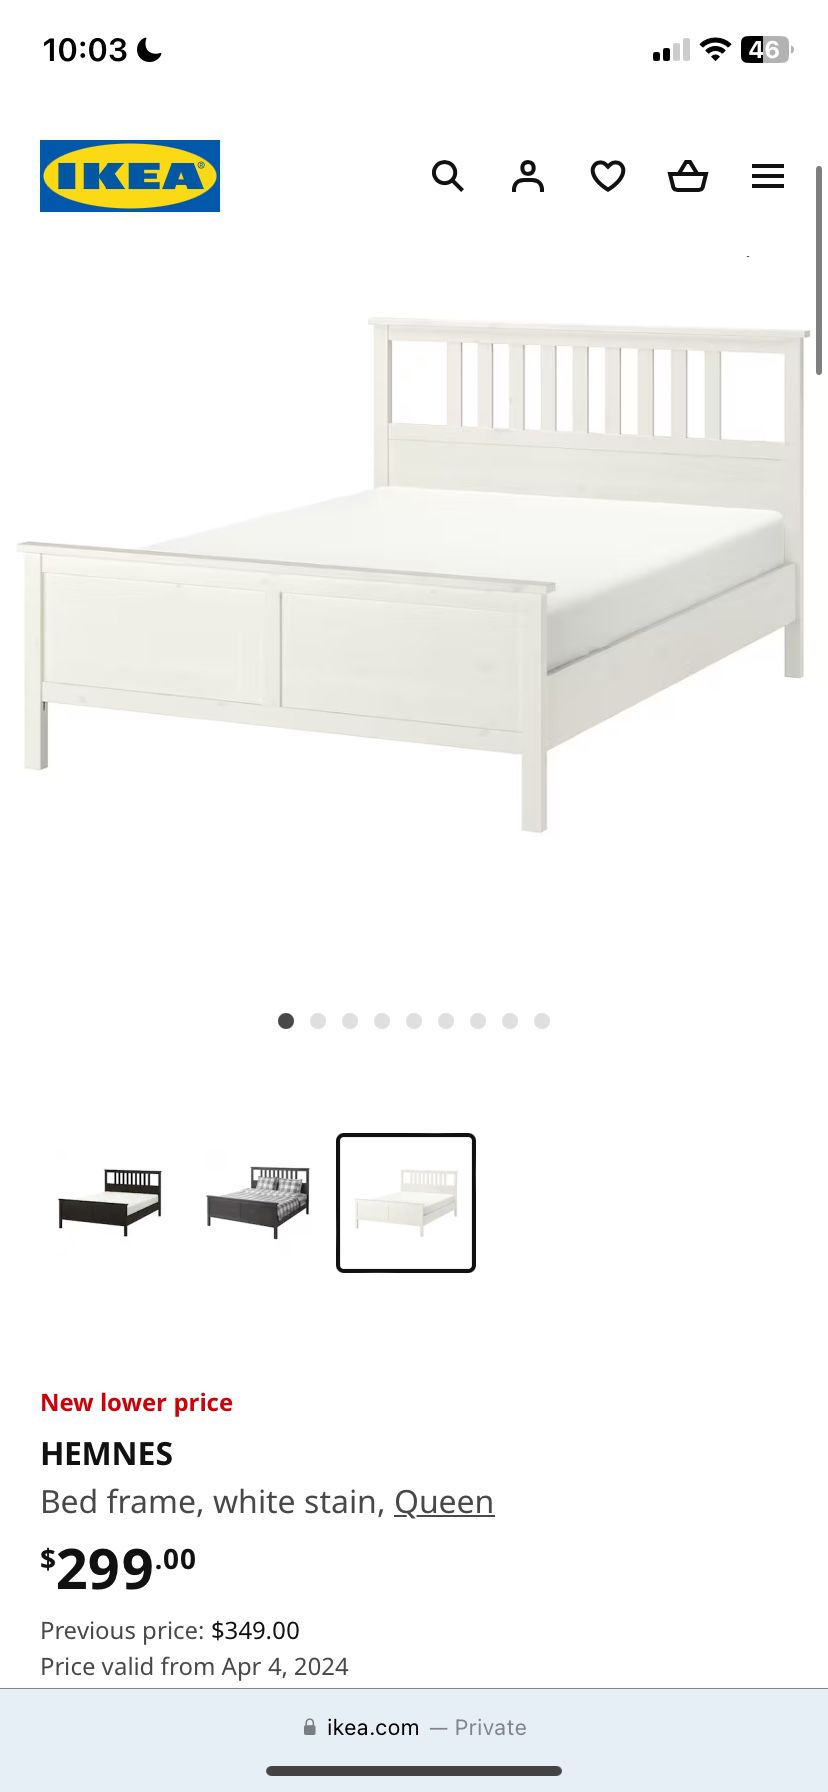 HEMNES IKEA QUEEN SIZE BED FRAME 